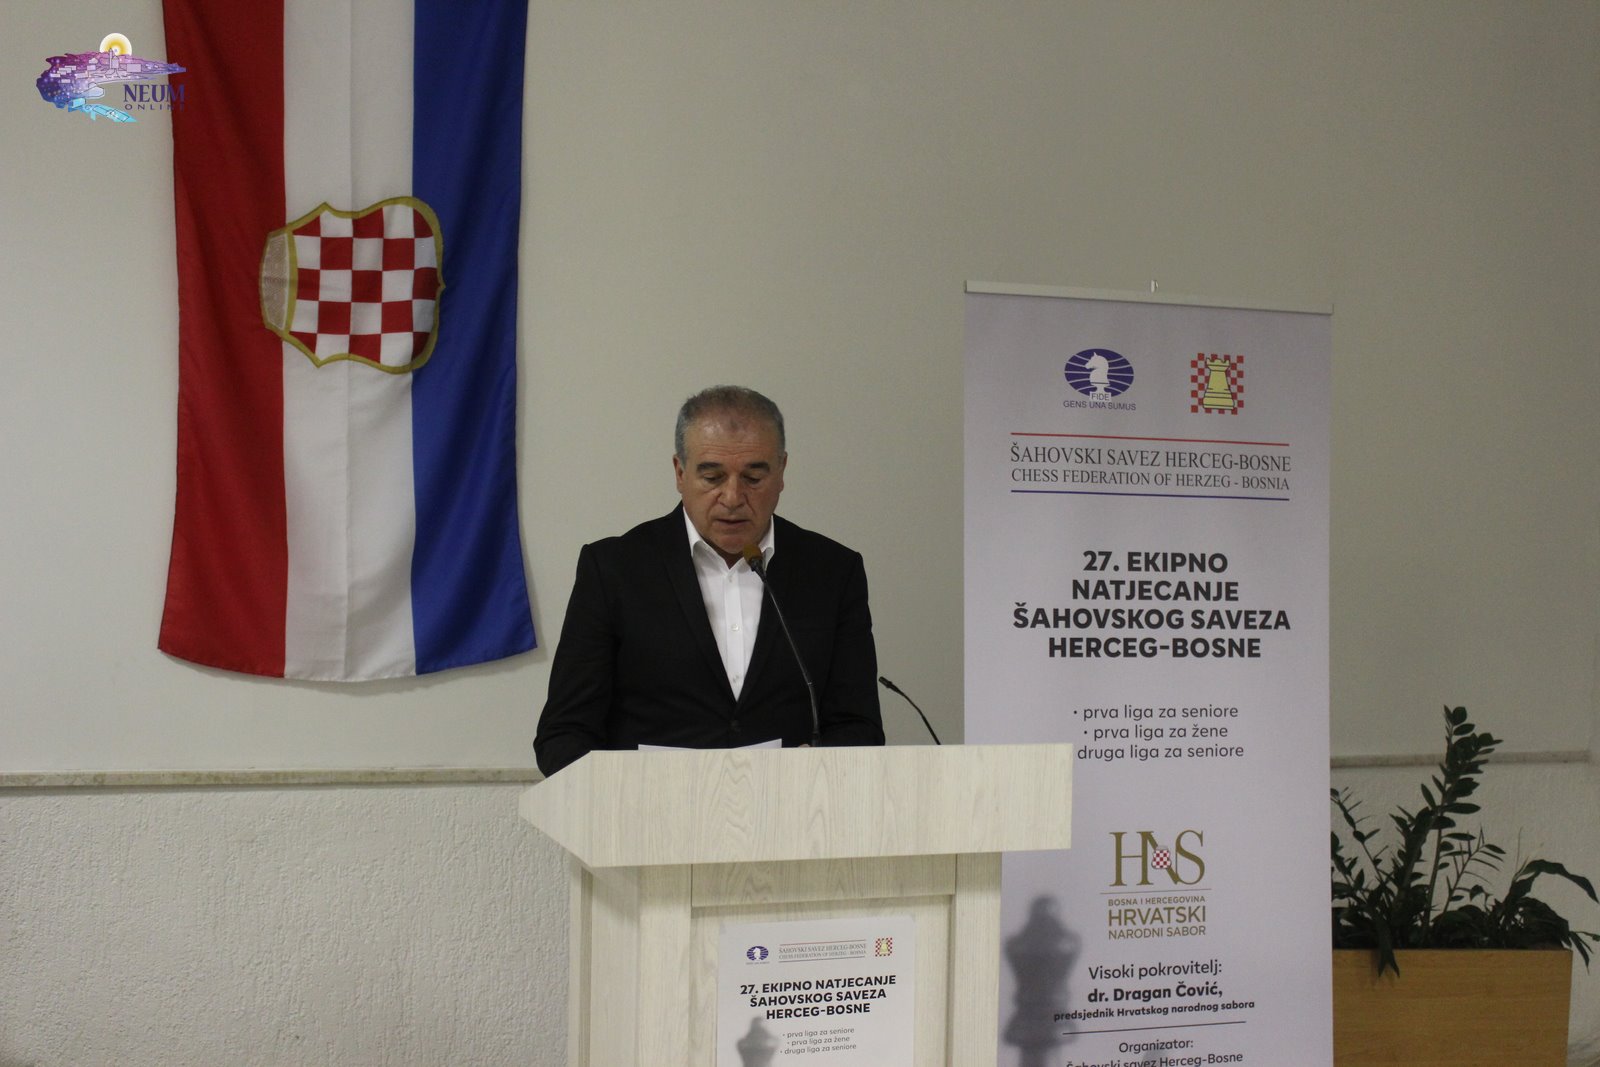 FOTO | U Neumu otvoreno 27. Ekipno natjecanje šahovskog saveza Herceg-Bosne